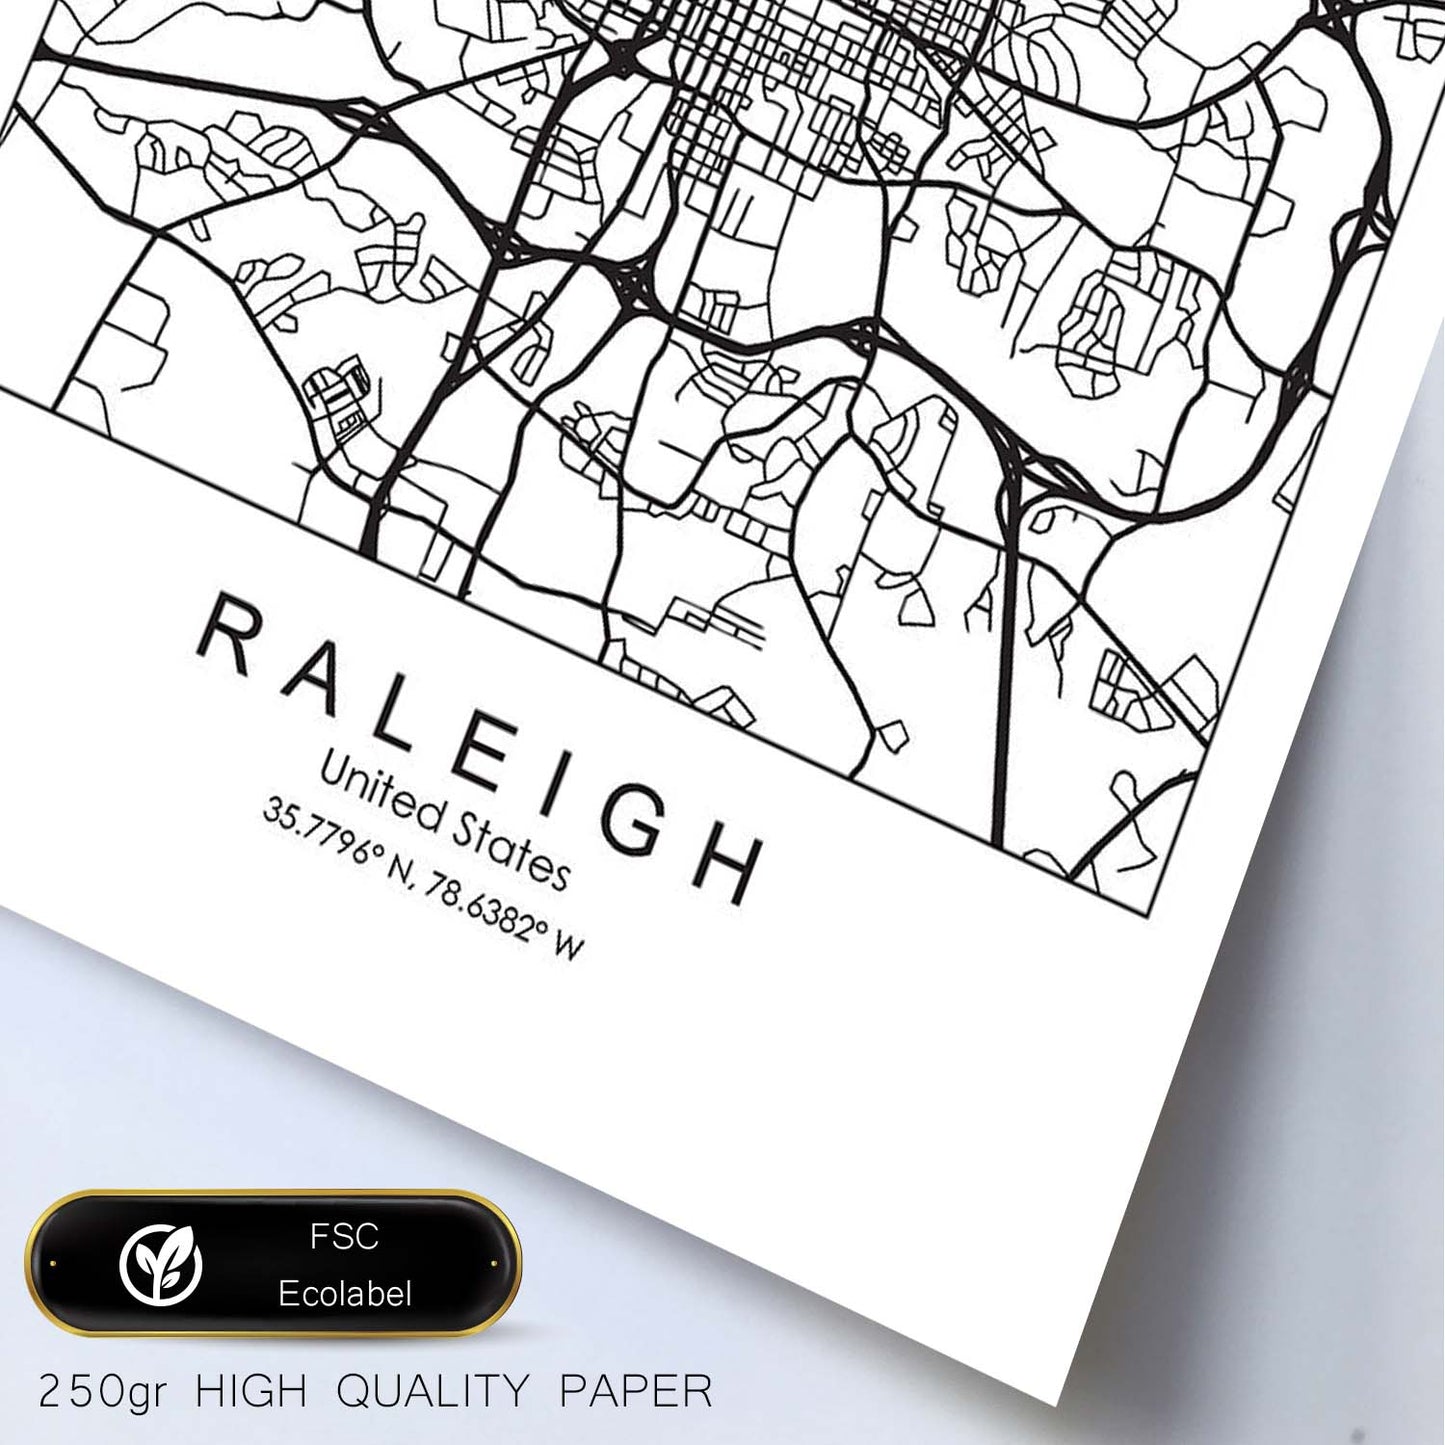 Poster con mapa de Raleigh. Lámina de Estados Unidos, con imágenes de mapas y carreteras-Artwork-Nacnic-Nacnic Estudio SL